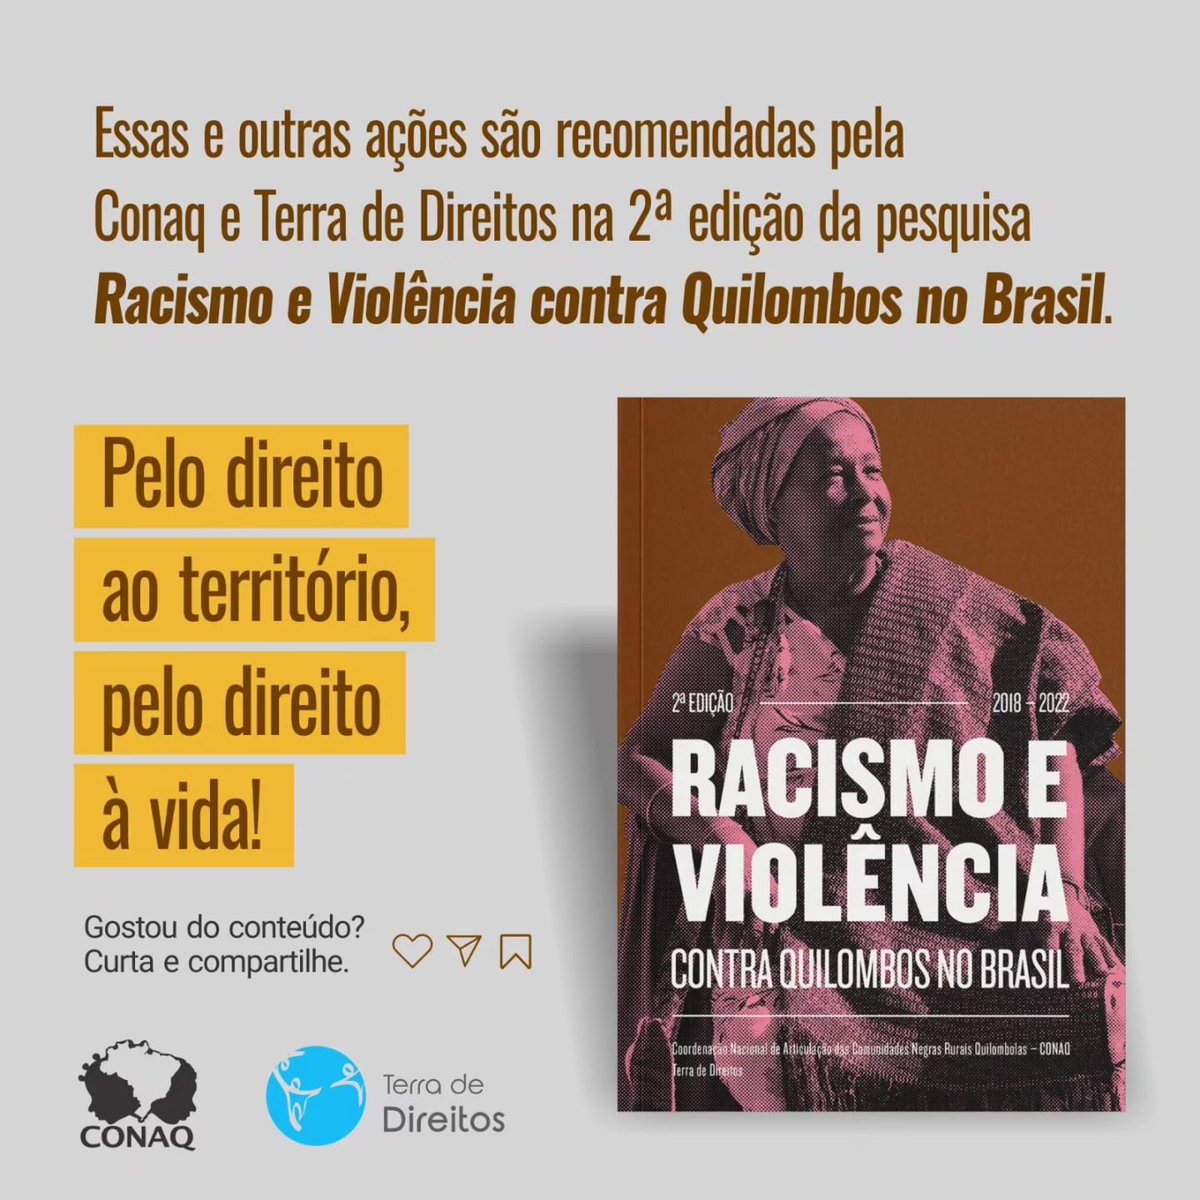 Saiba mais sobre a pesquisa: terradedireitos.org.br/racismoeviolen… #NãoAoRacismo #21deMarço